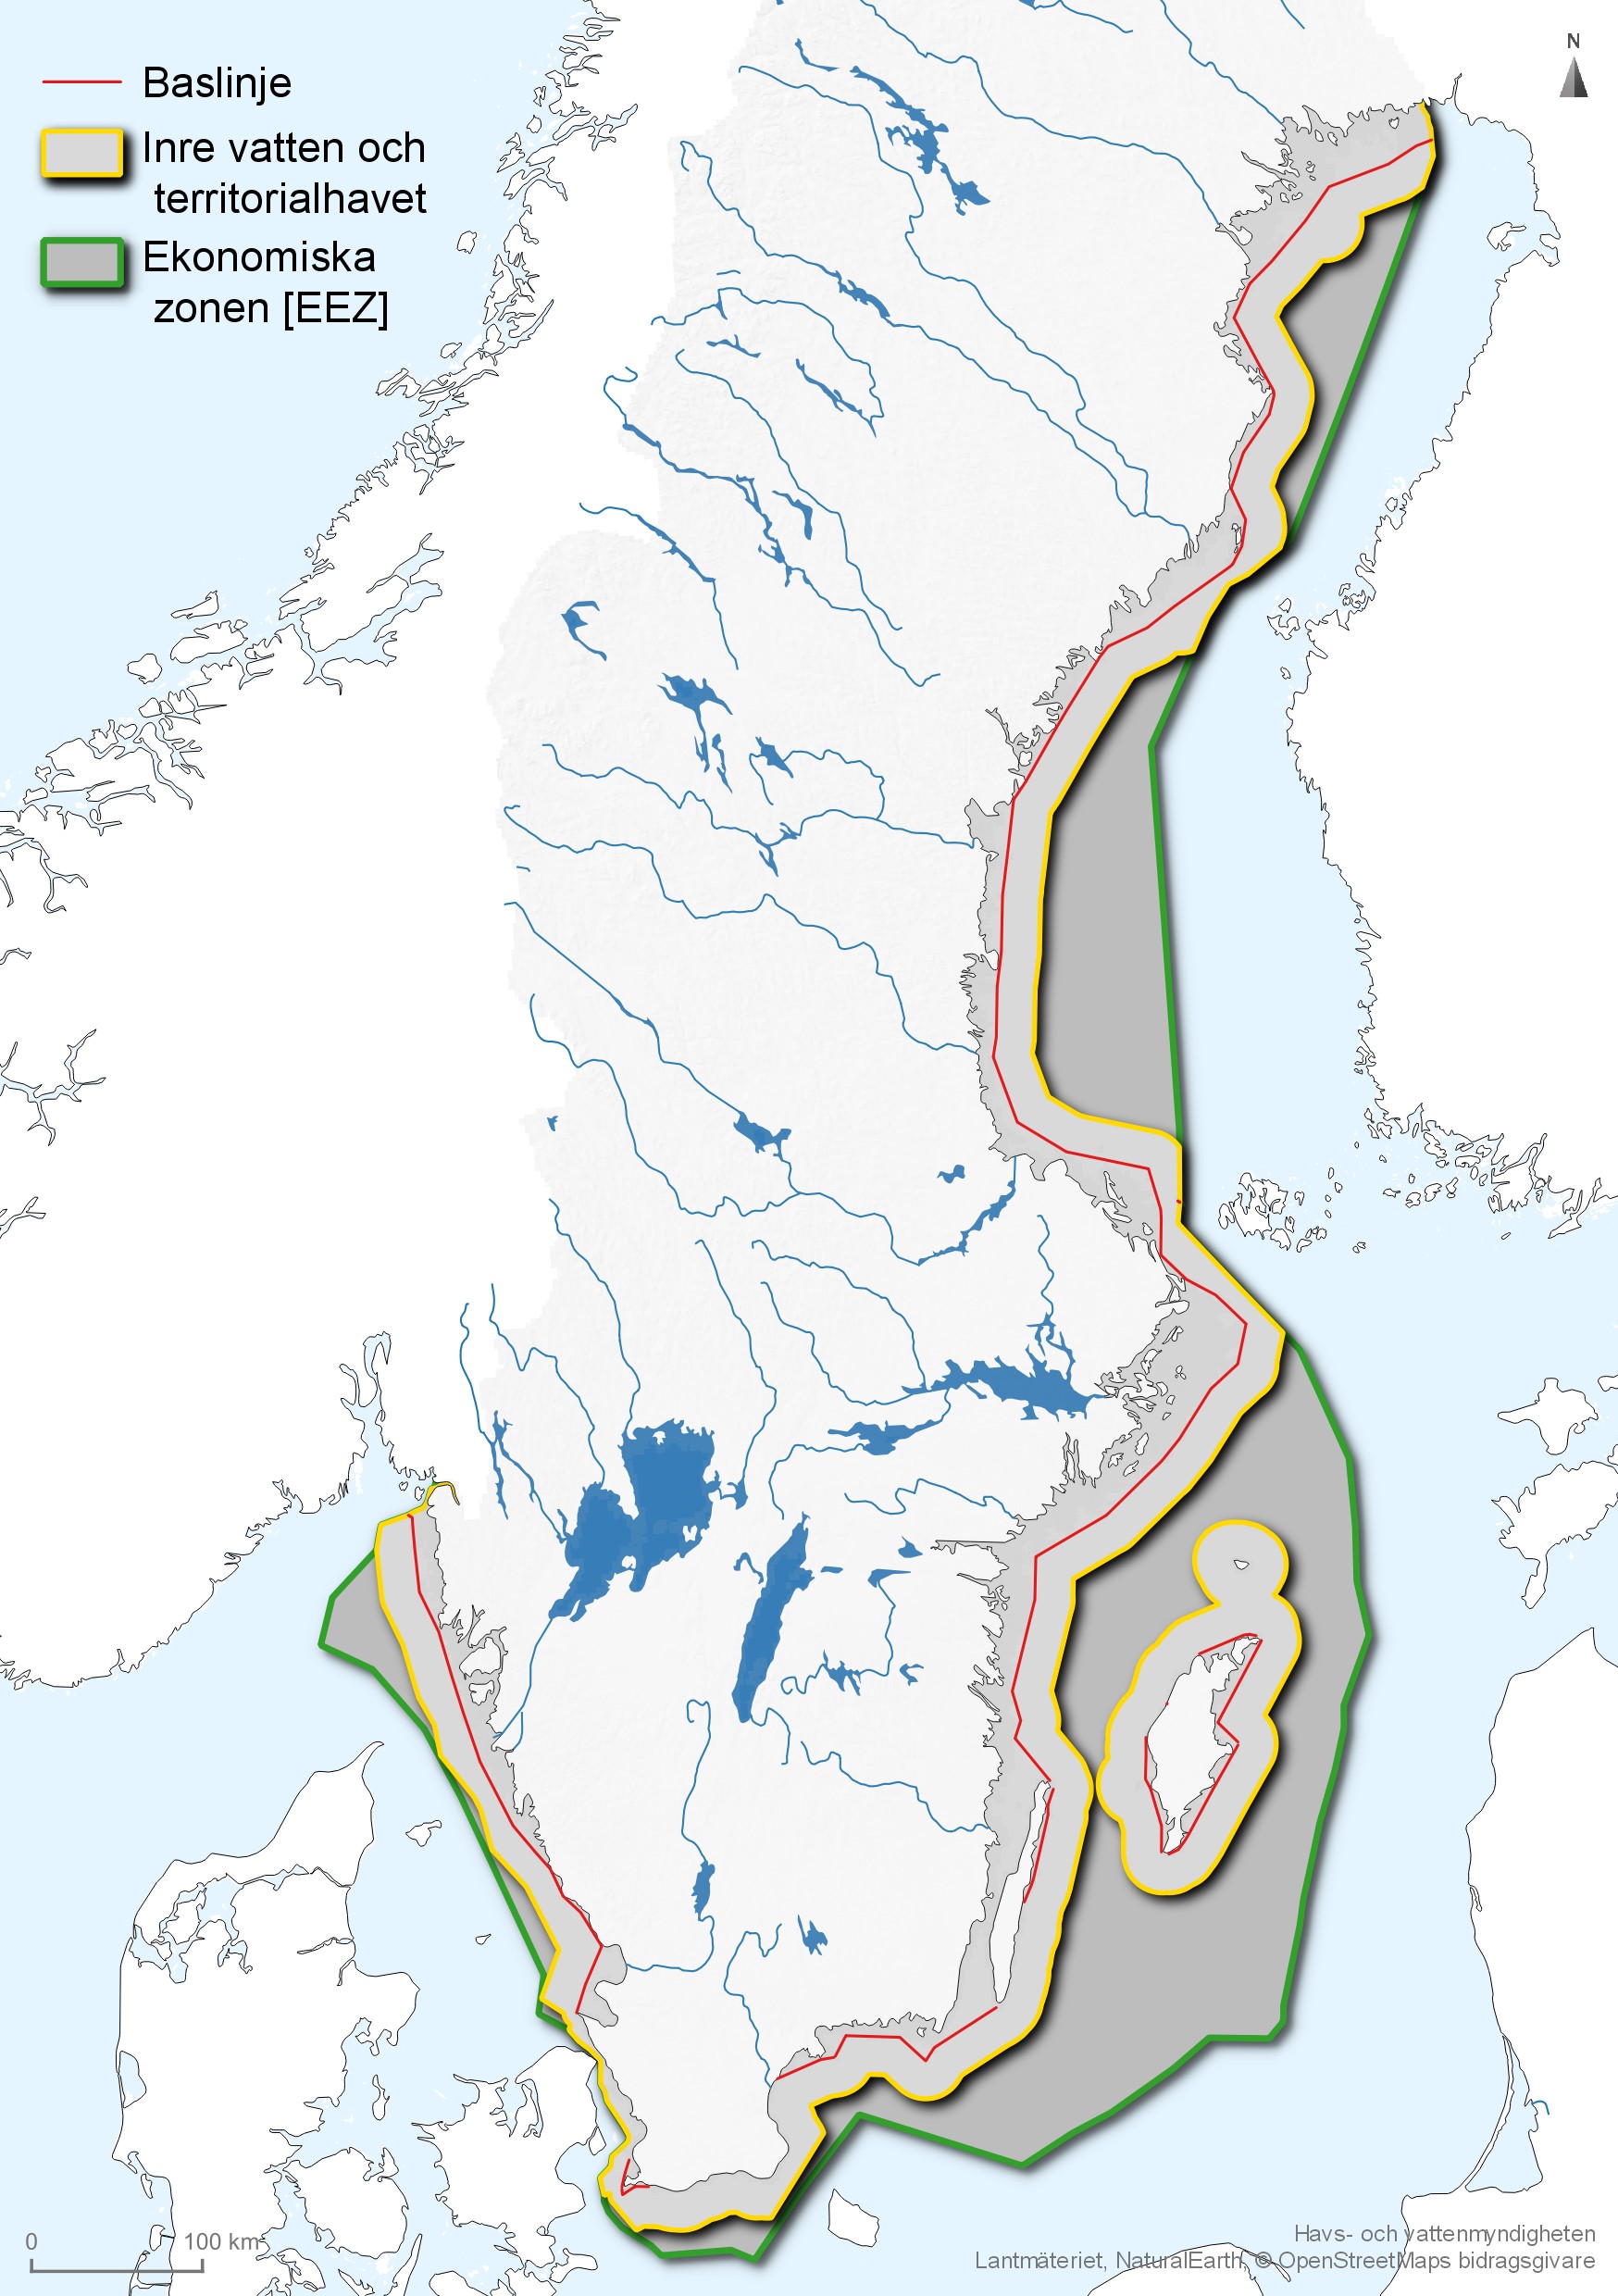 Utsträckningen av det svenska inre vattnet (i havet), territorialhavet och den ekonomiska zonen